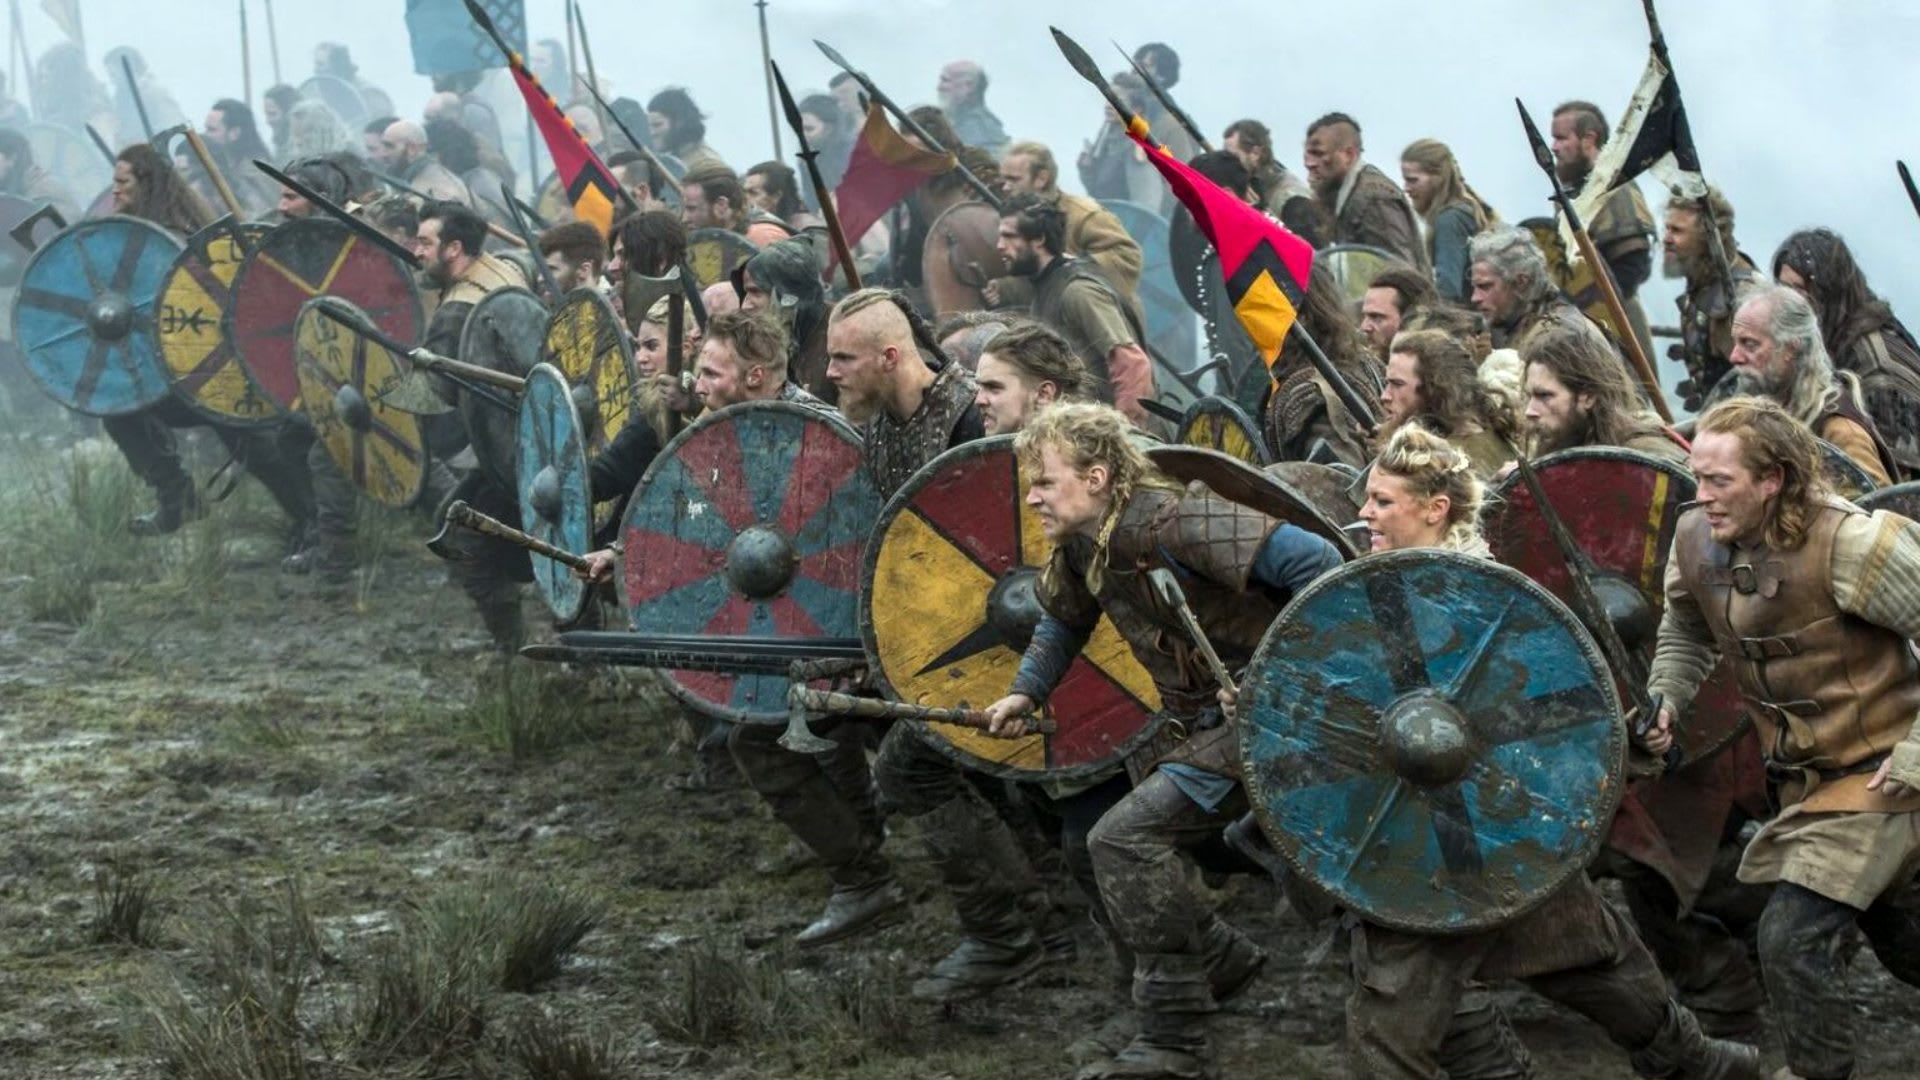 Na Vikingy naváže nový seriál Vikingové: Valhalla